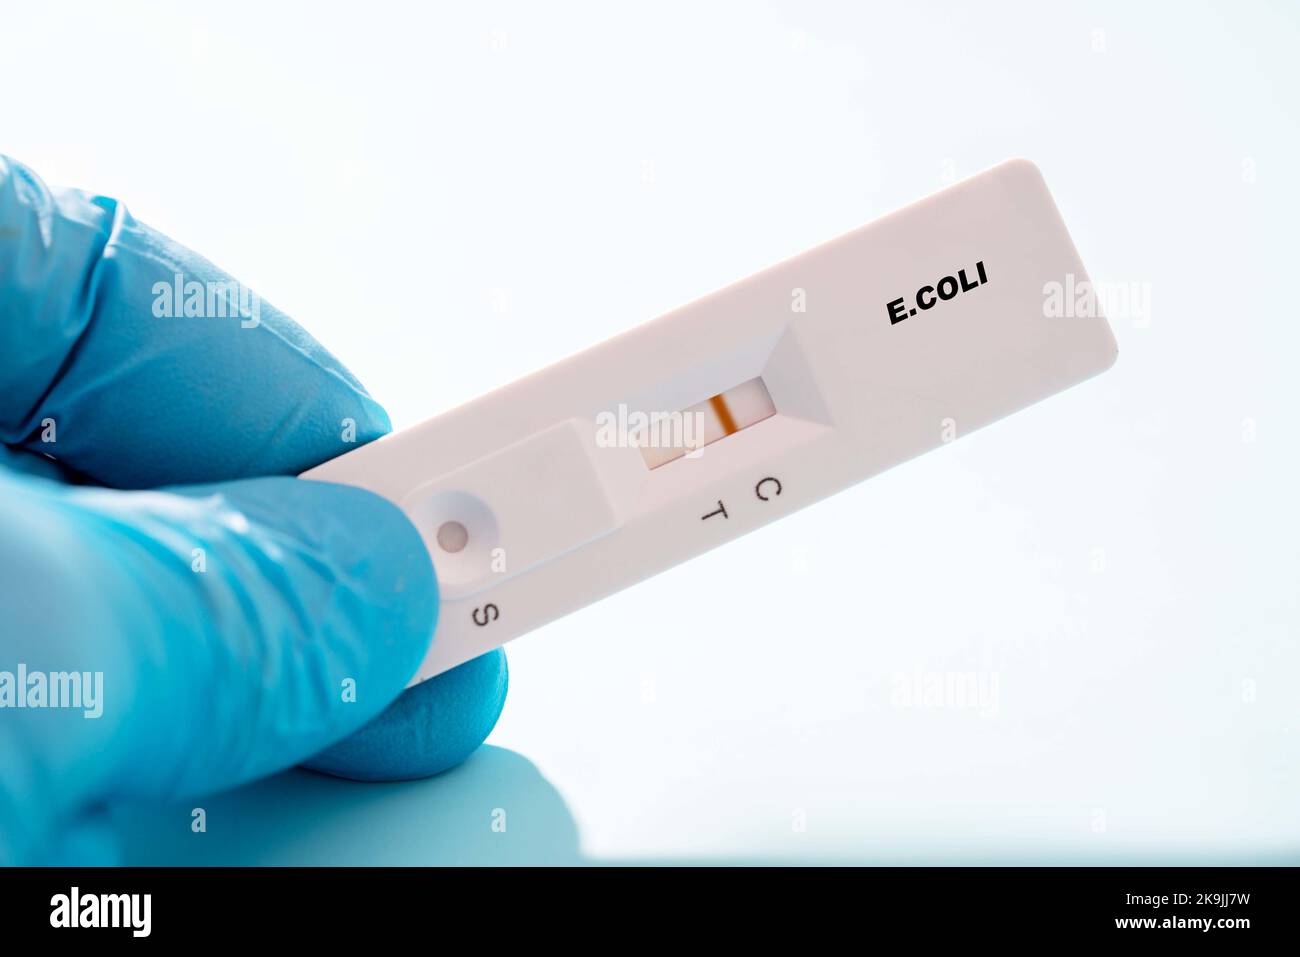 Test rapido negativo di E. coli, immagine concettuale Foto Stock